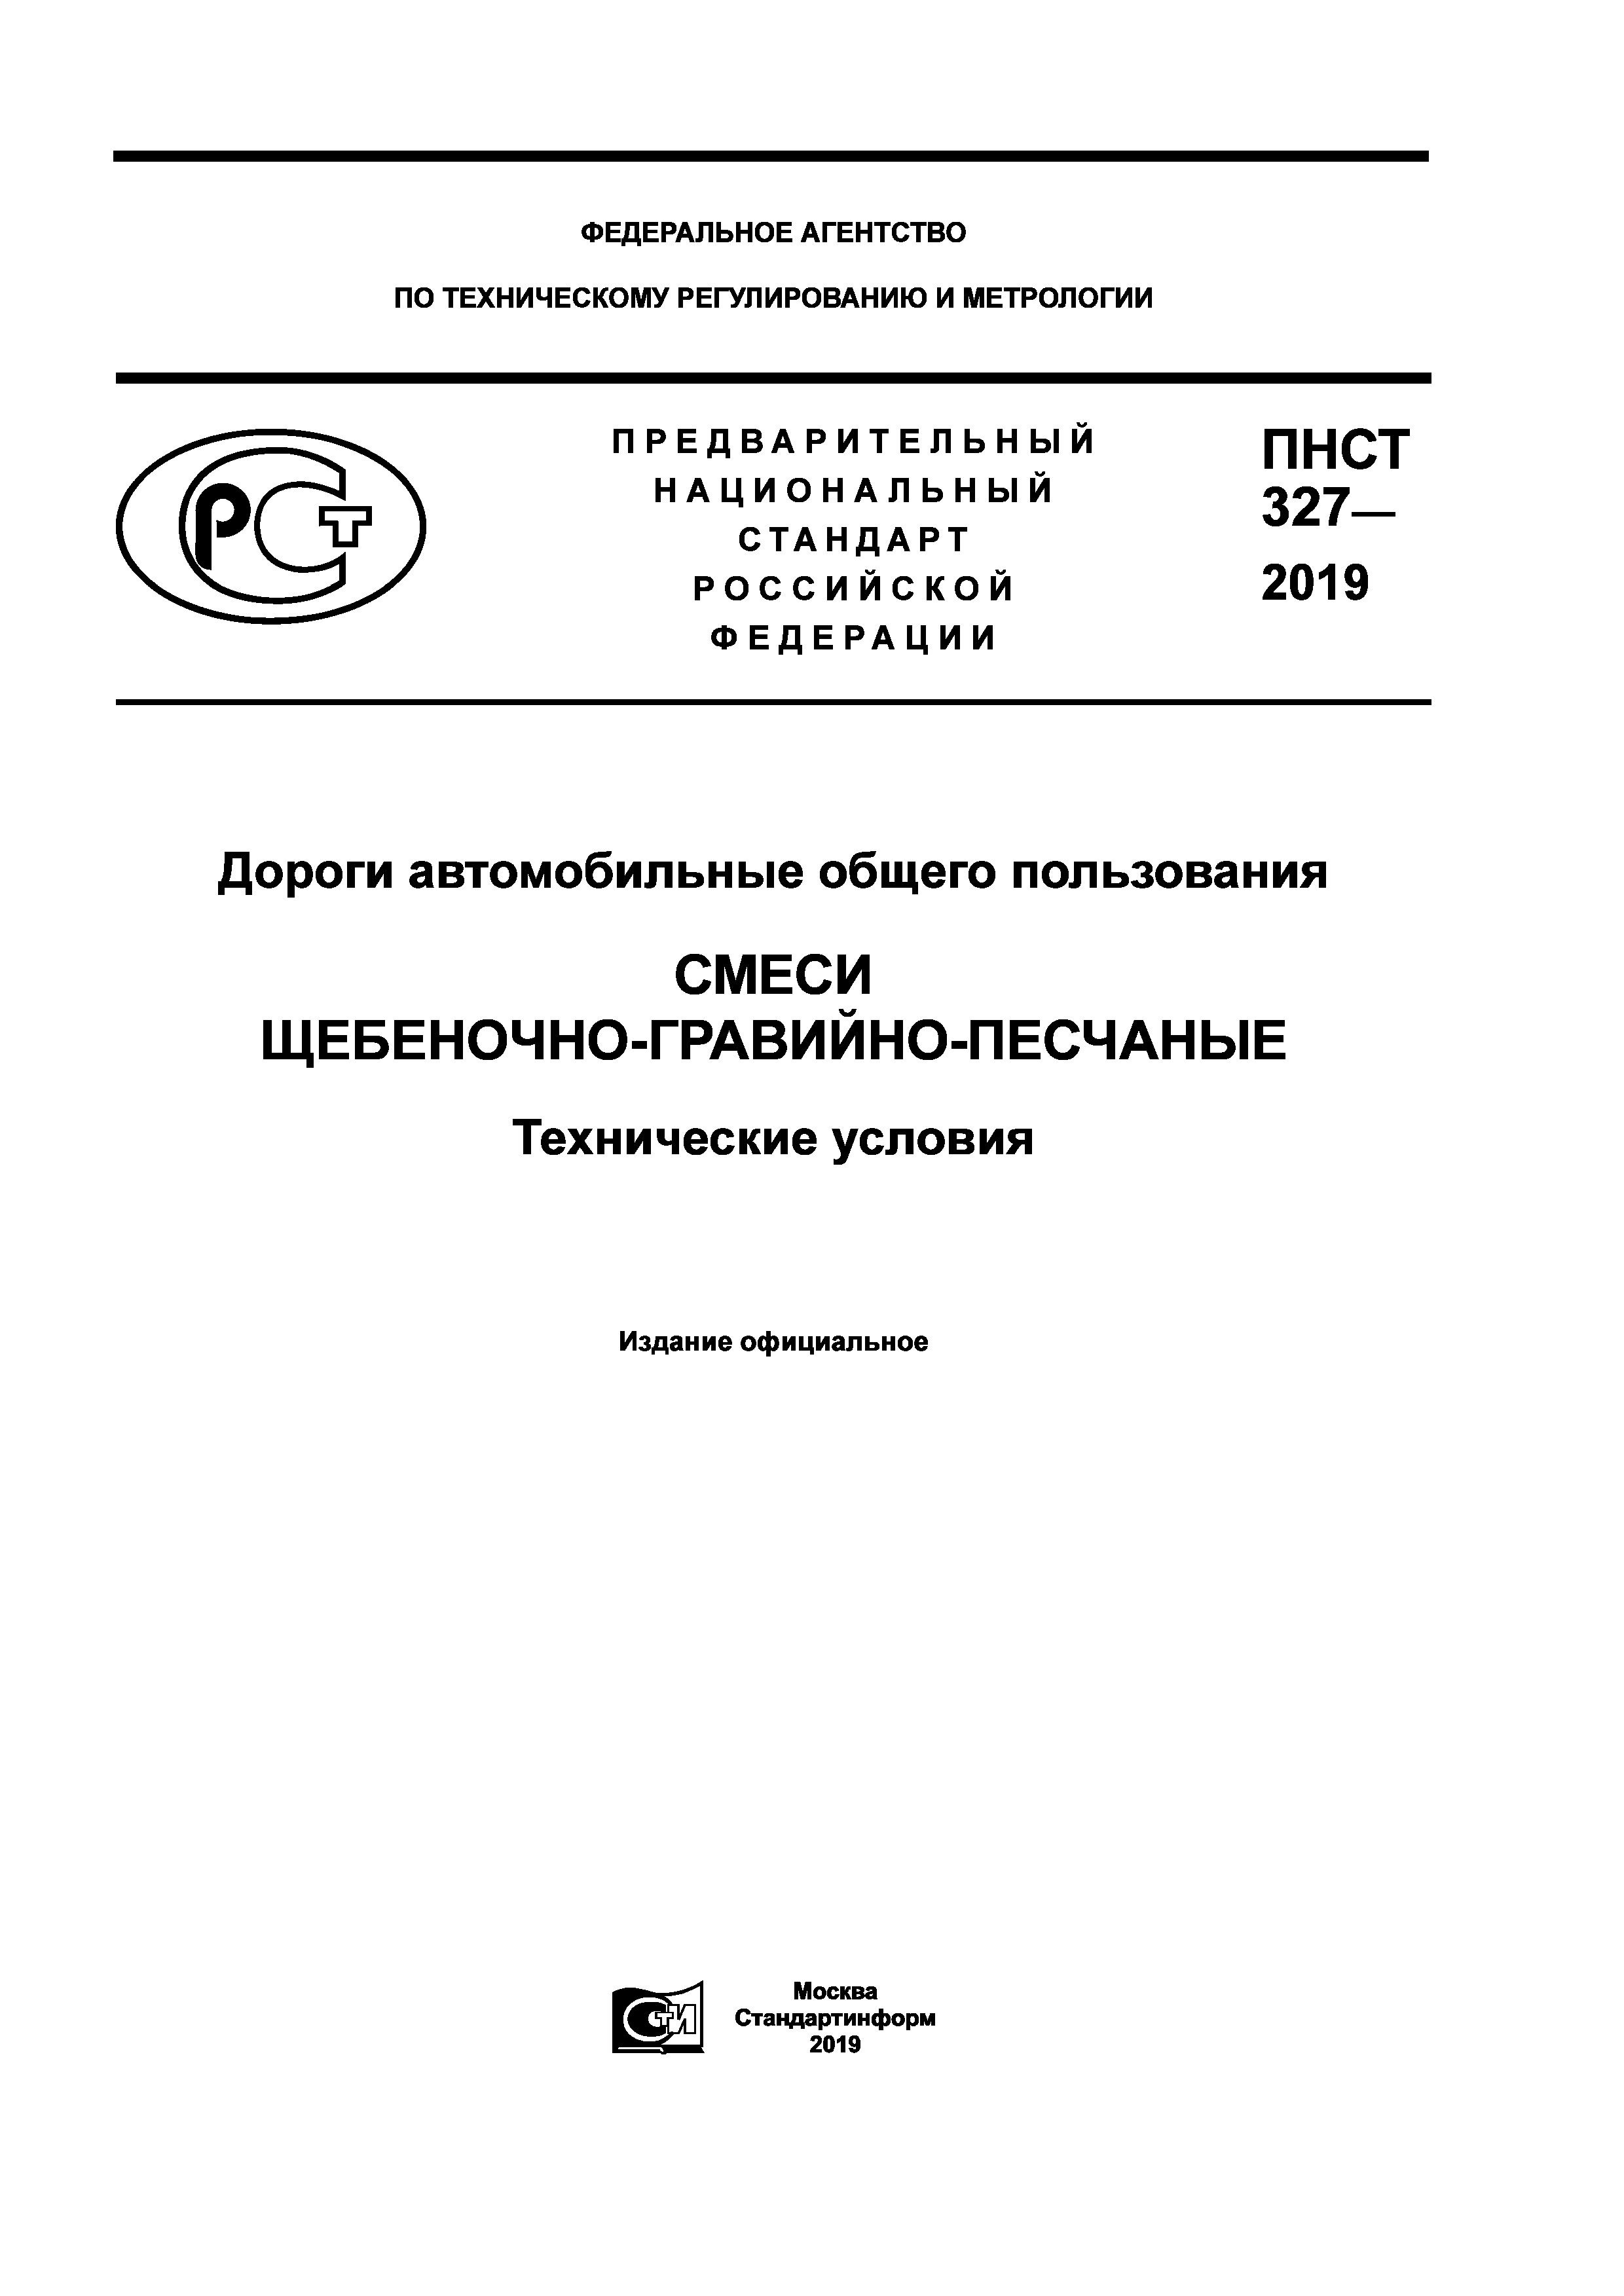 ЩПС по ПНСТ 327-2019